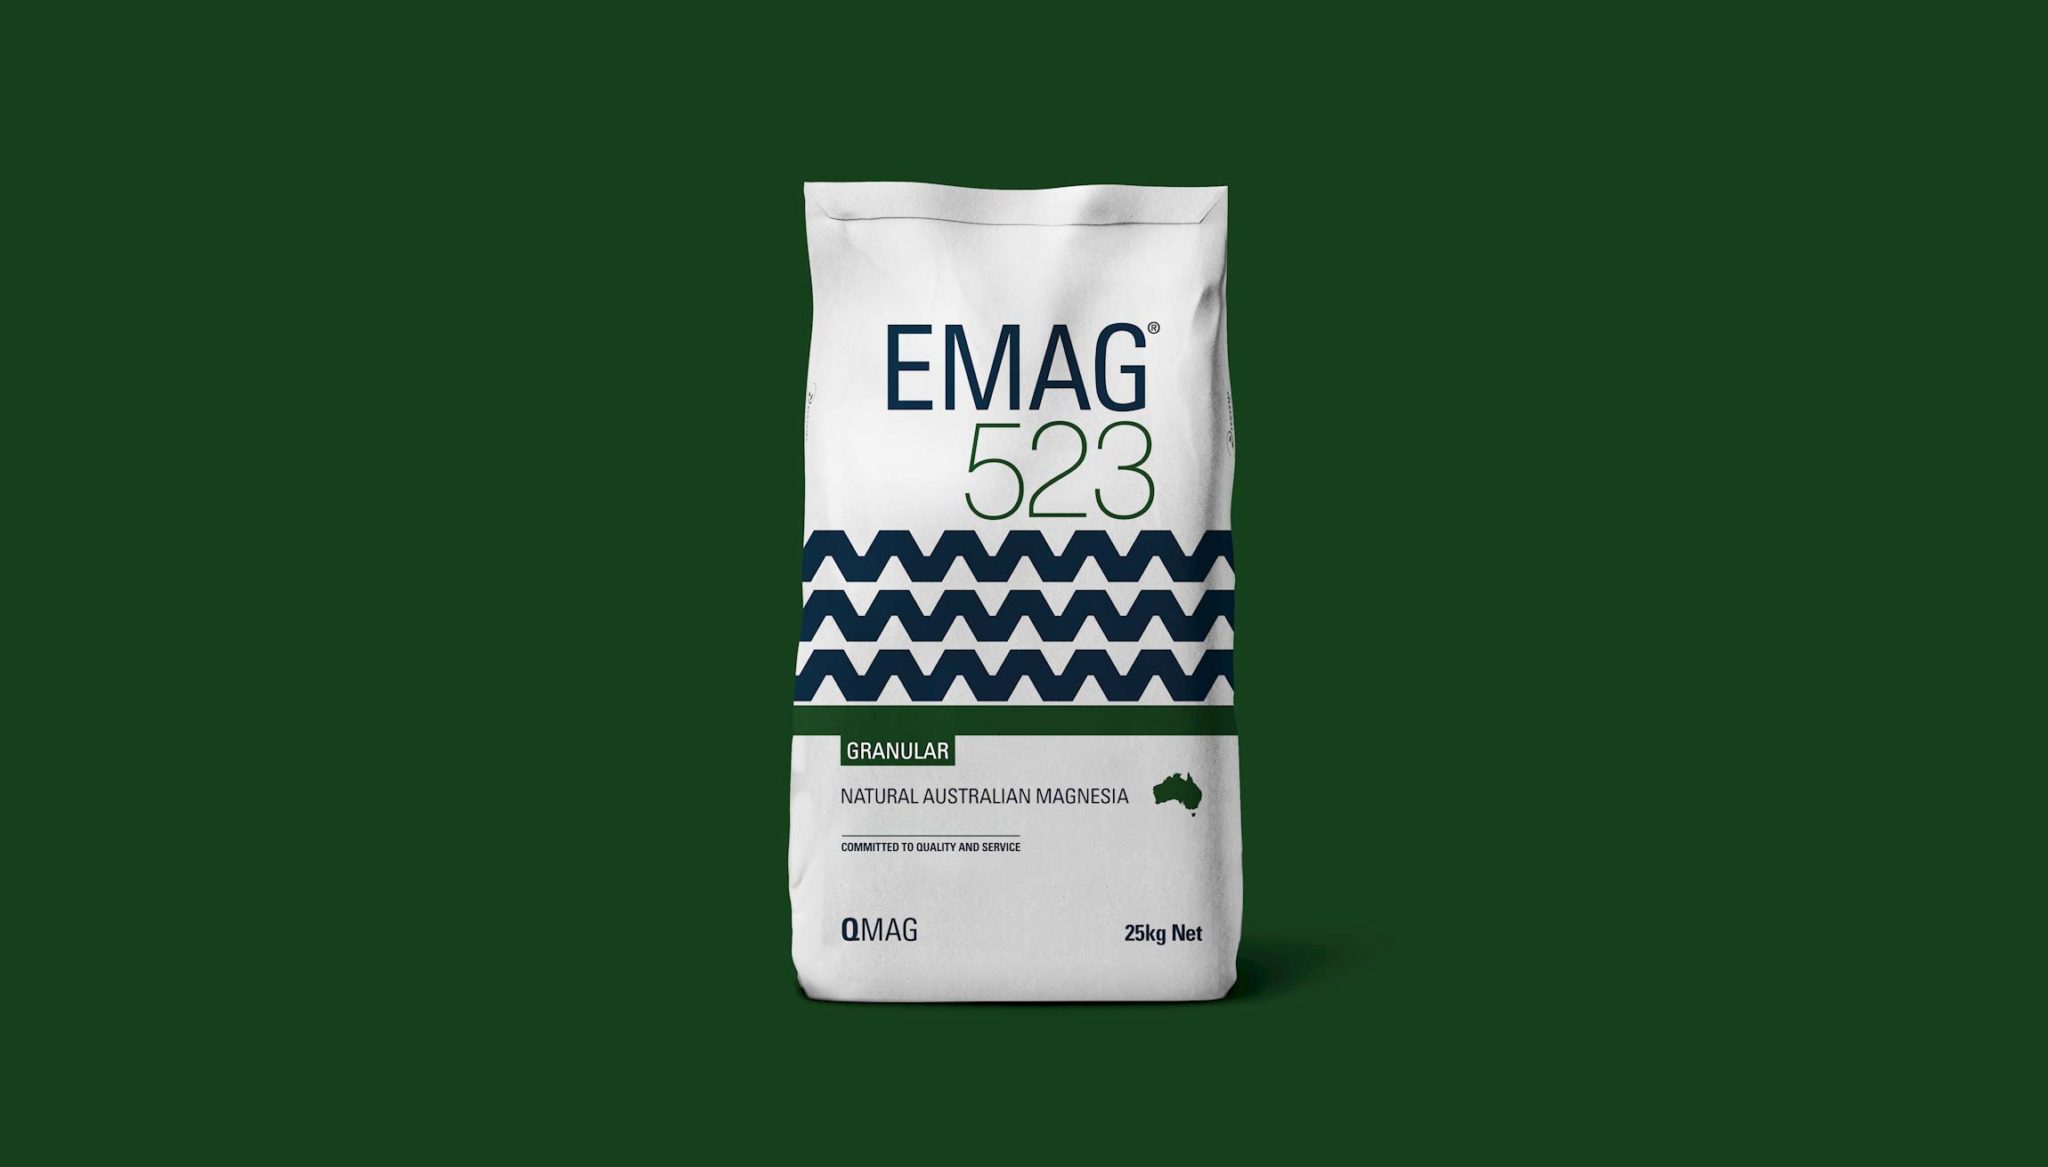 Qmag Magnesium Packaging Re-Design